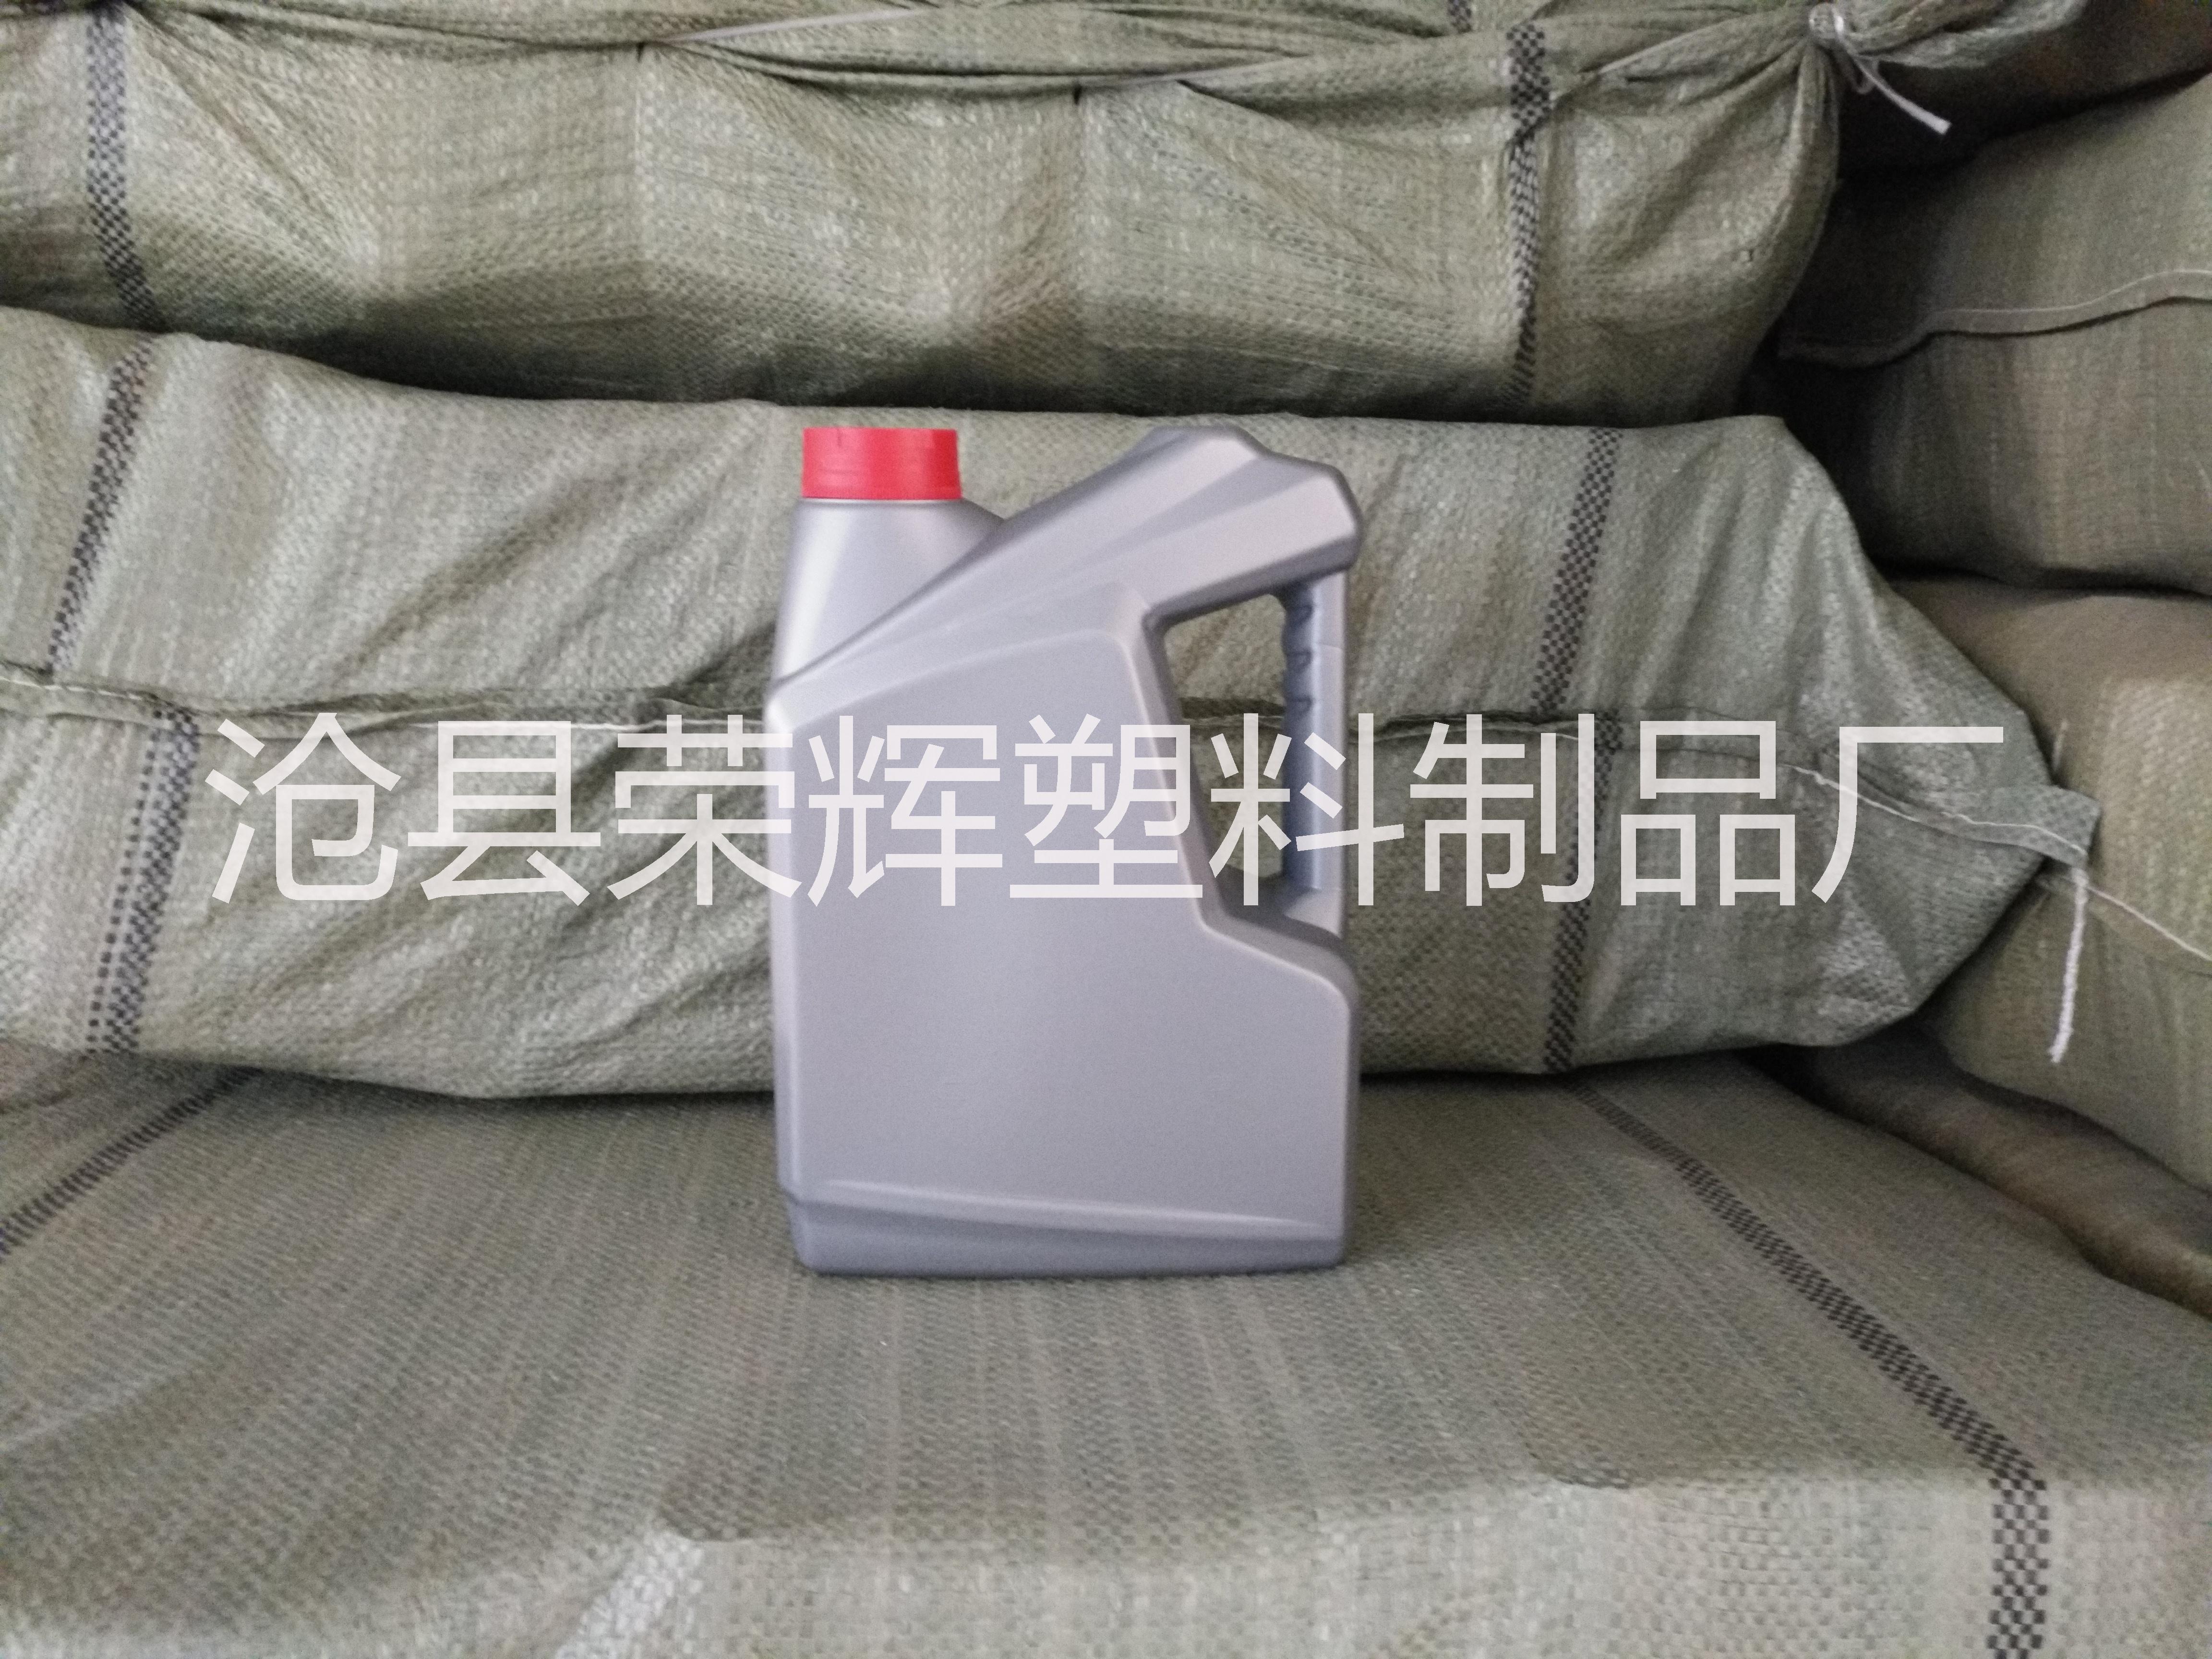 防冻液桶厂家河北沧州防冻液桶厂家尿素桶生产厂家10升尿素桶厂家9升尿素桶厂家